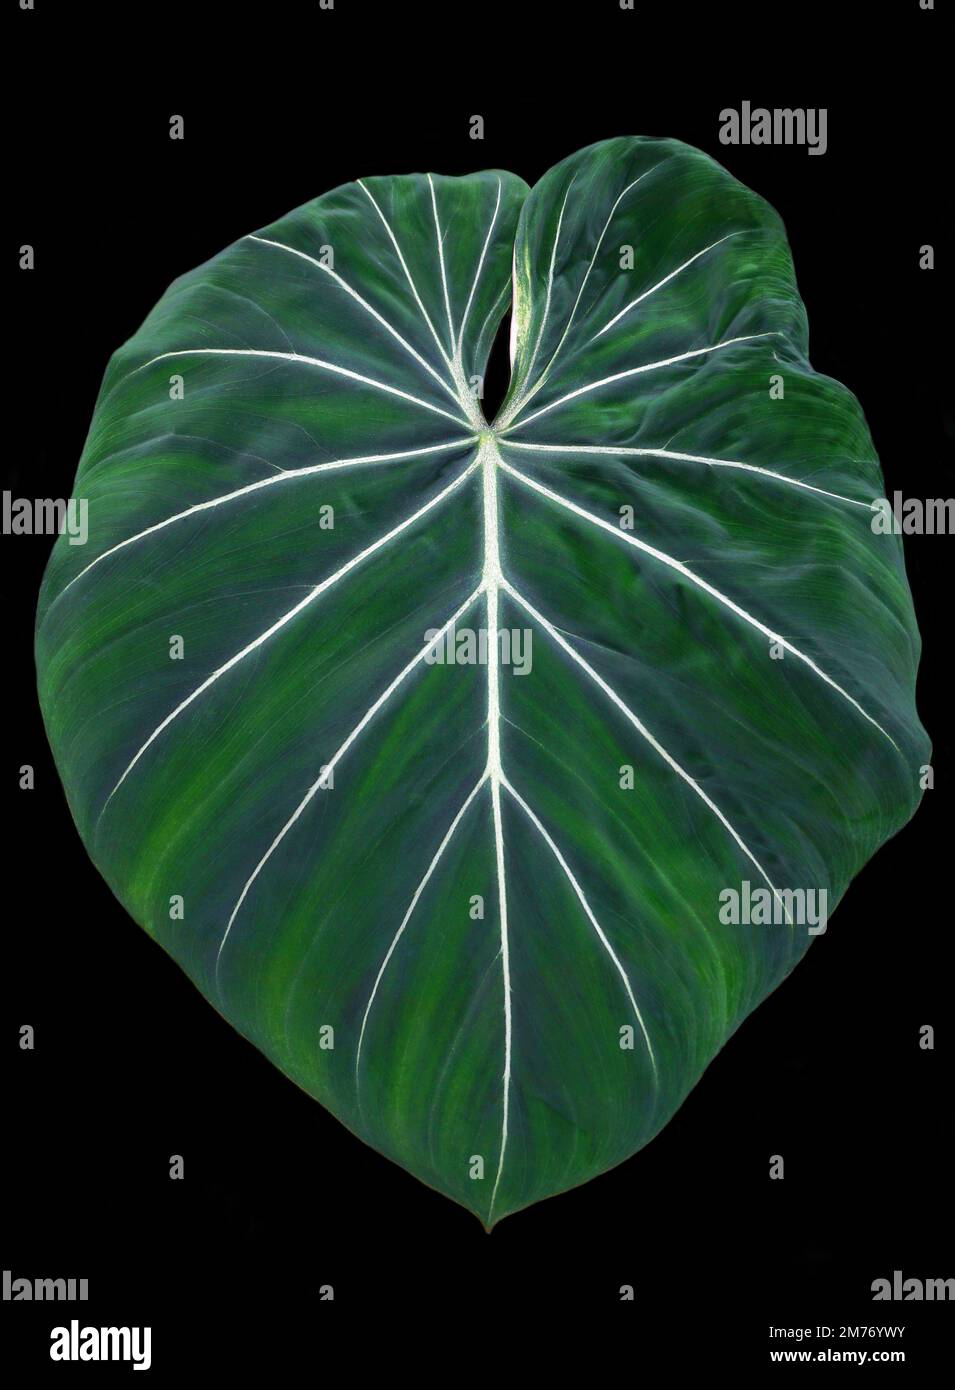 Alismatales - Araceae.Philodendron gloriosum.genus de planta con flores en la familia de Araceae. Planta terrestre rastreadora encontrada en Colombia.HBL20220424 Foto de stock